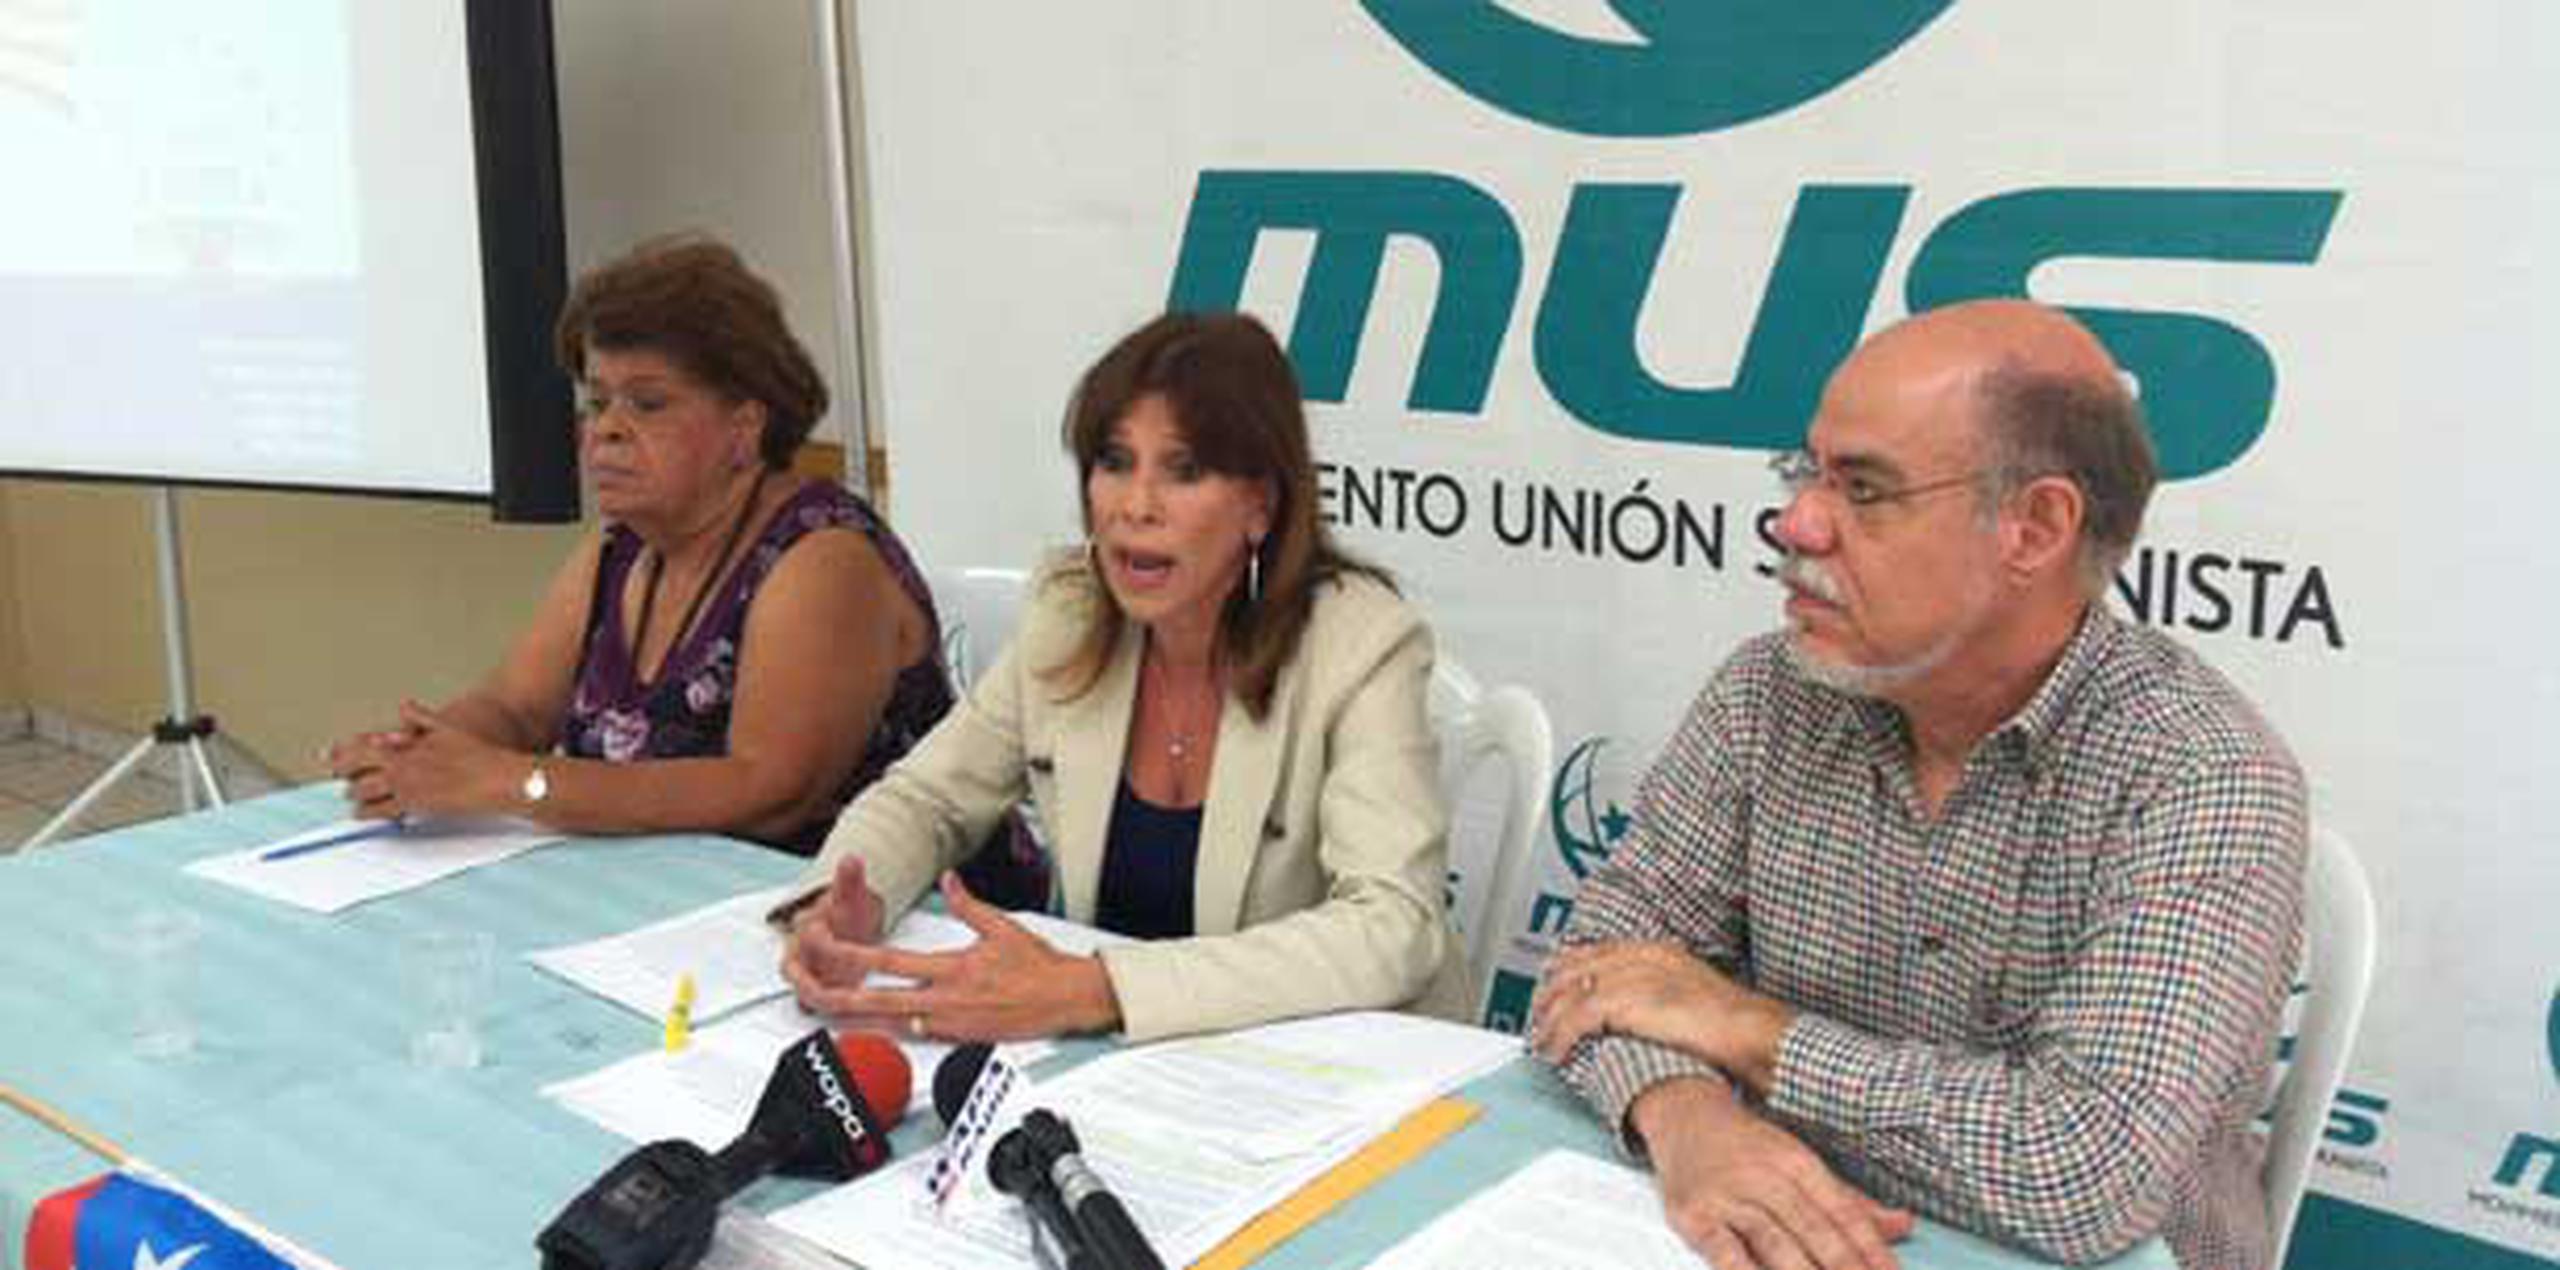 La formación política anunció este lunes en una conferencia de prensa en San Juan, que comenzará una "campaña educativa" en contra de la anexión plena. (Suministrada)